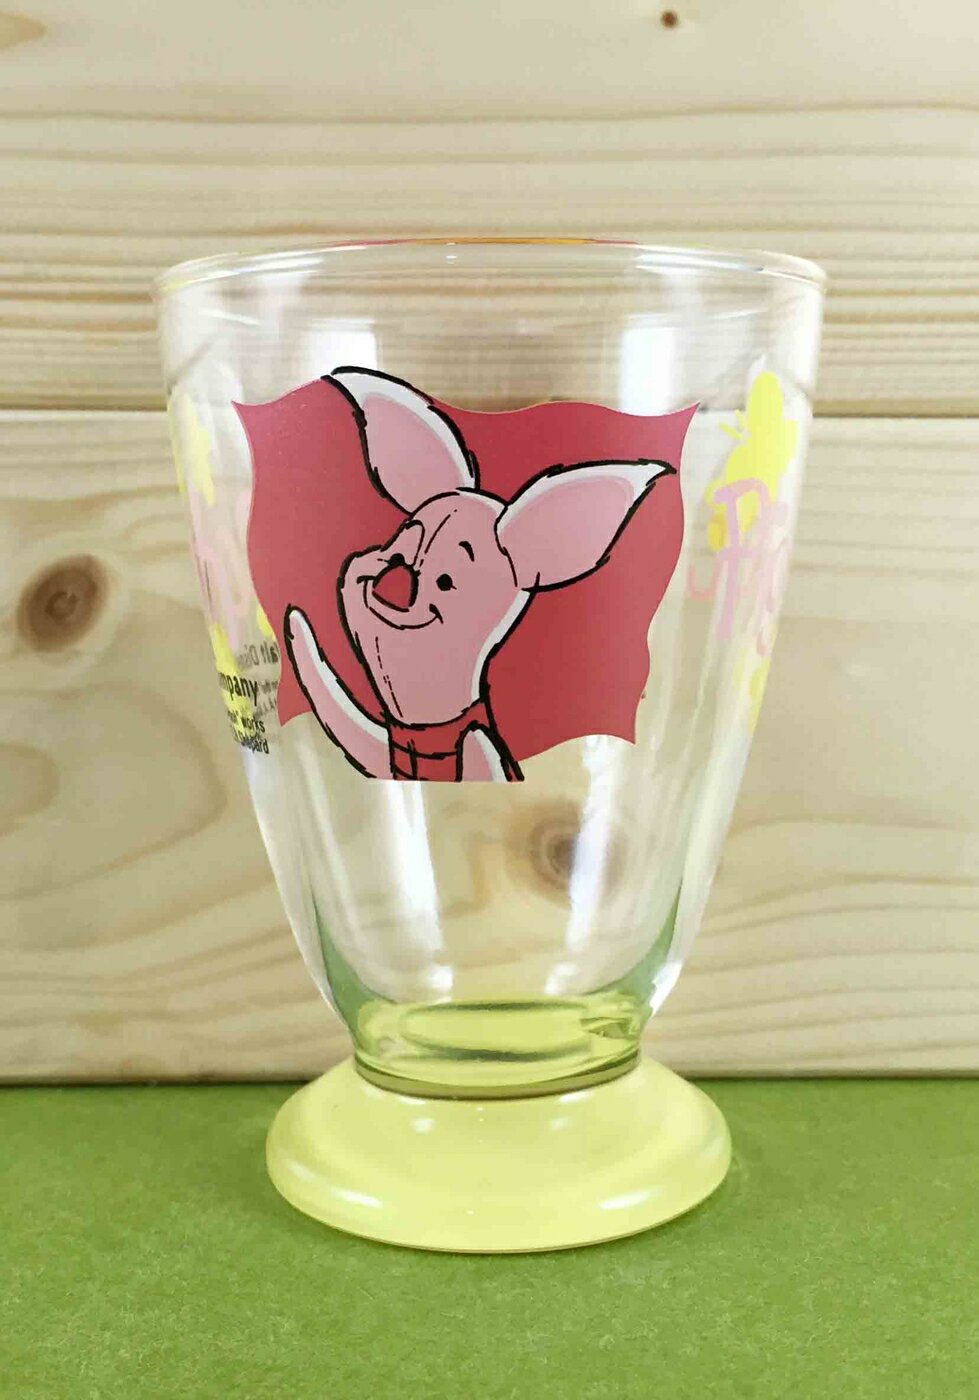 【震撼精品百貨】Winnie the Pooh 小熊維尼 玻璃杯-黃小豬 震撼日式精品百貨